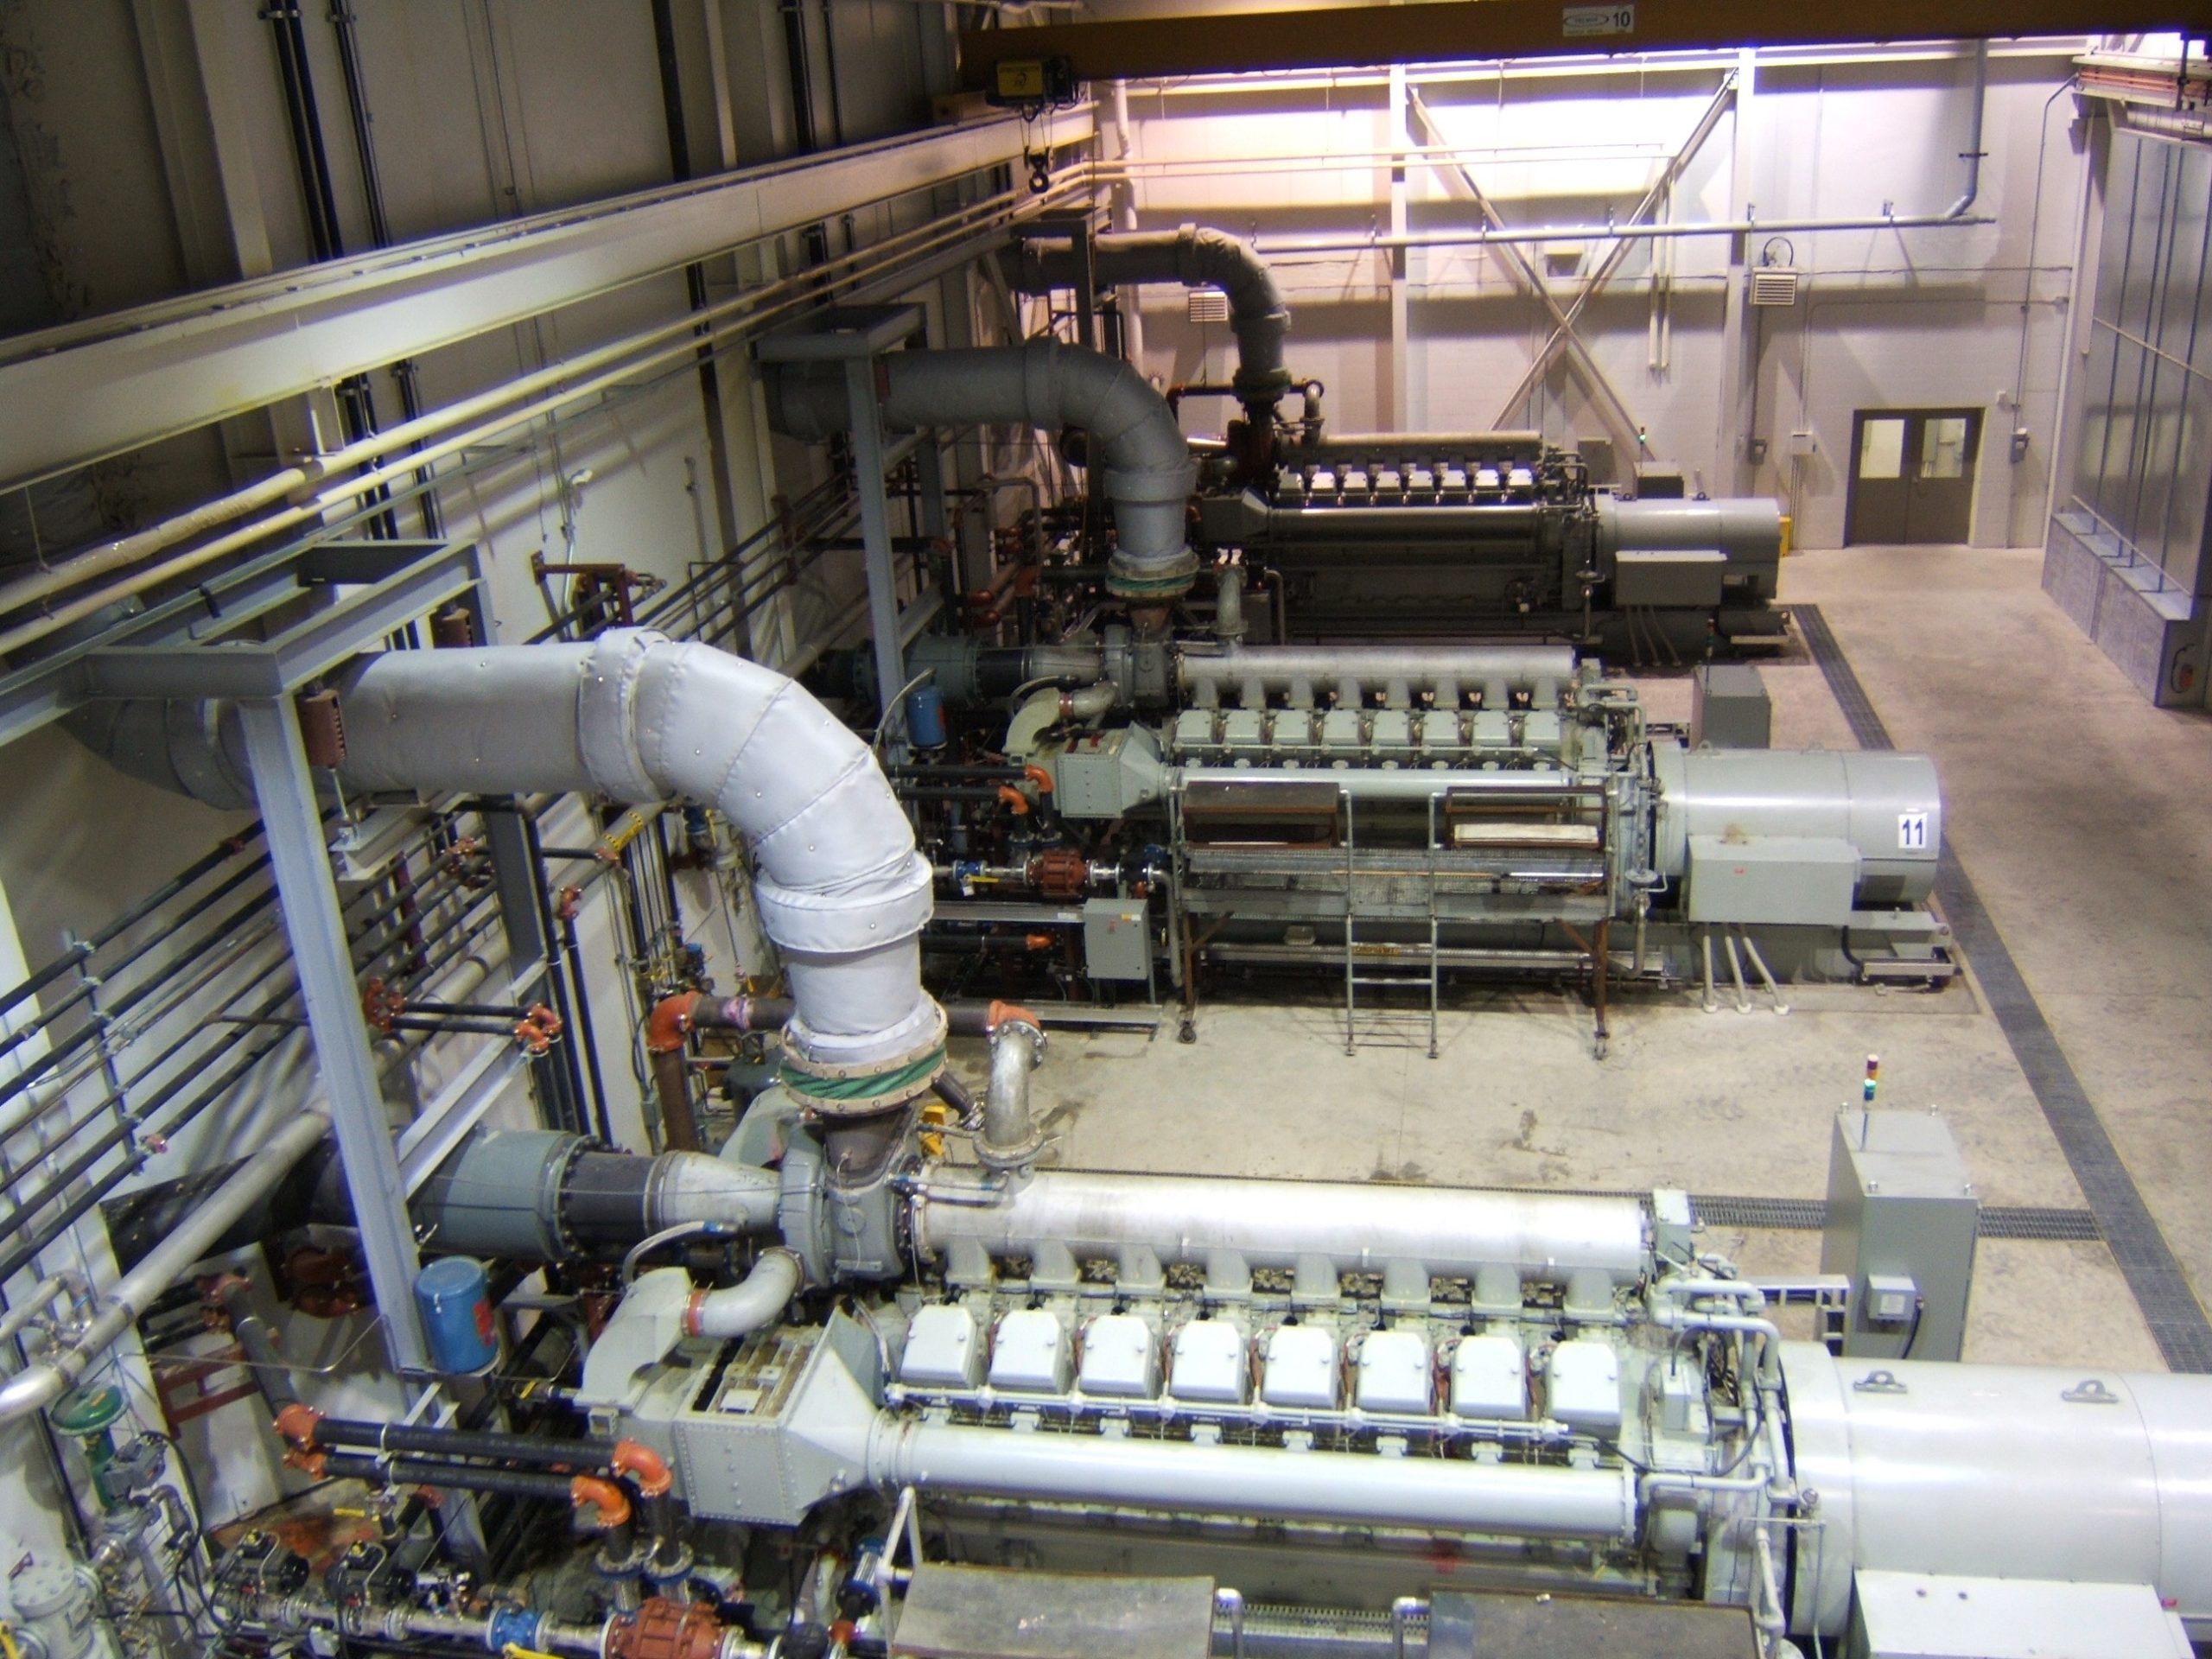 Interior of biogas facility